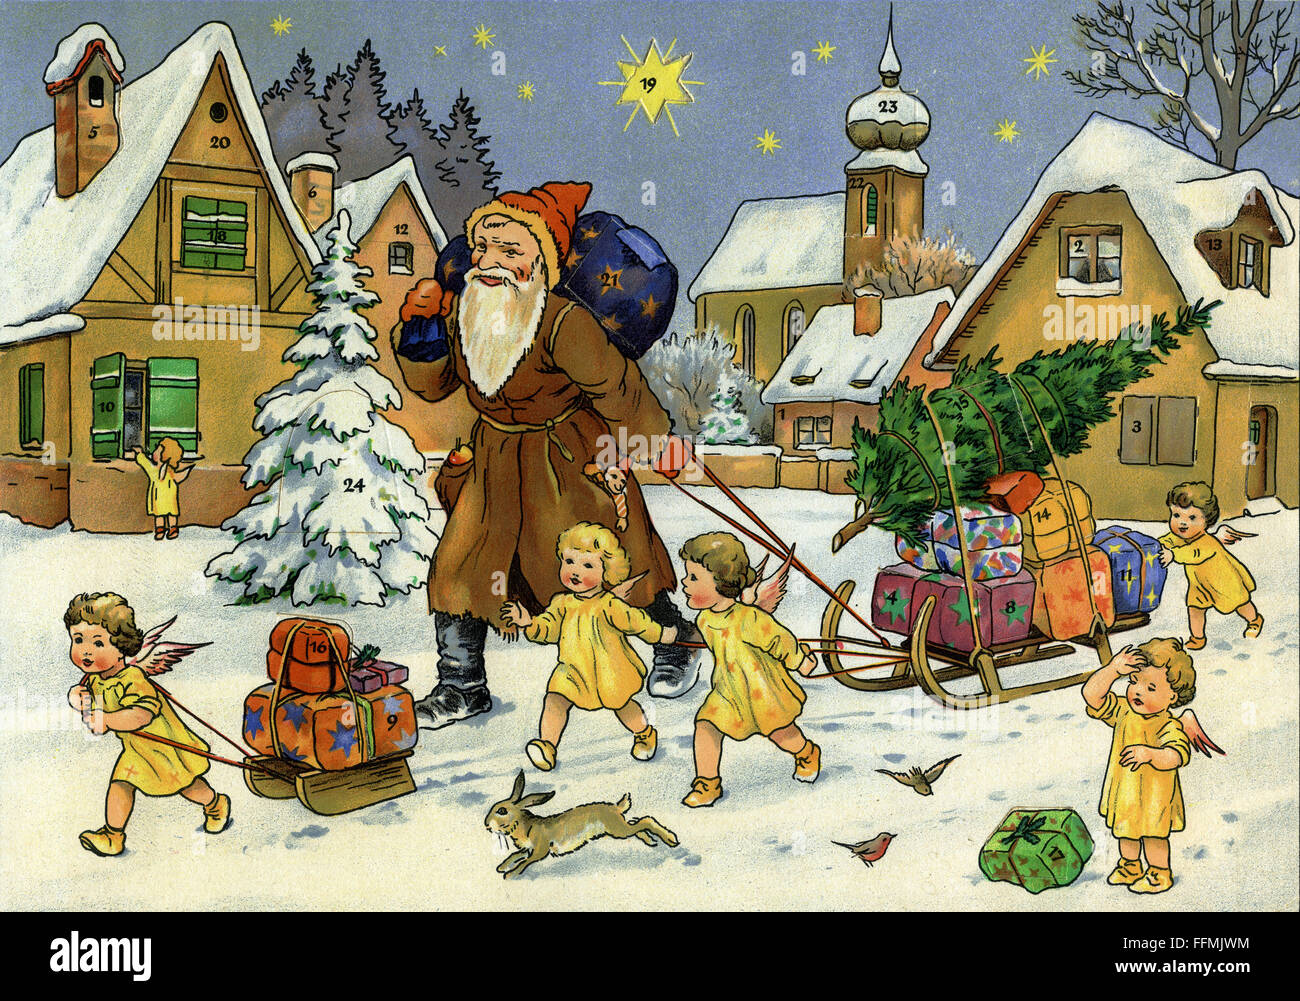 Navidad, calendario de Adviento, Navidad del Padre, San Nicolás, pequeño ángel, entrega de regalos, Alemania, alrededor de 1948, Derechos adicionales-Clearences-no disponible Foto de stock